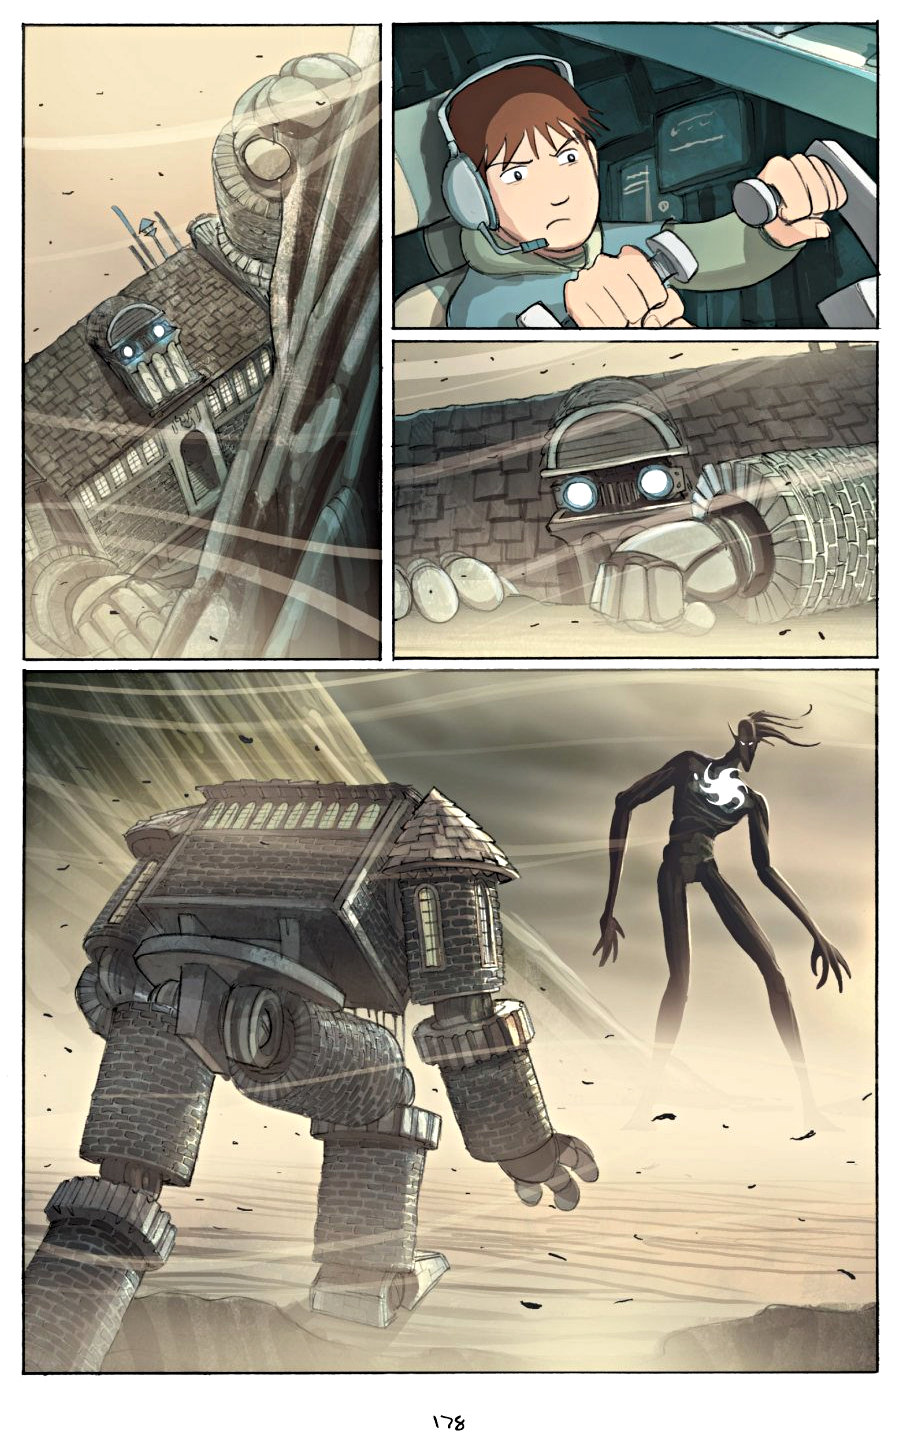 page 178 of amulet 2 stonekeeper's curse graphic novel by kazu kibuishi